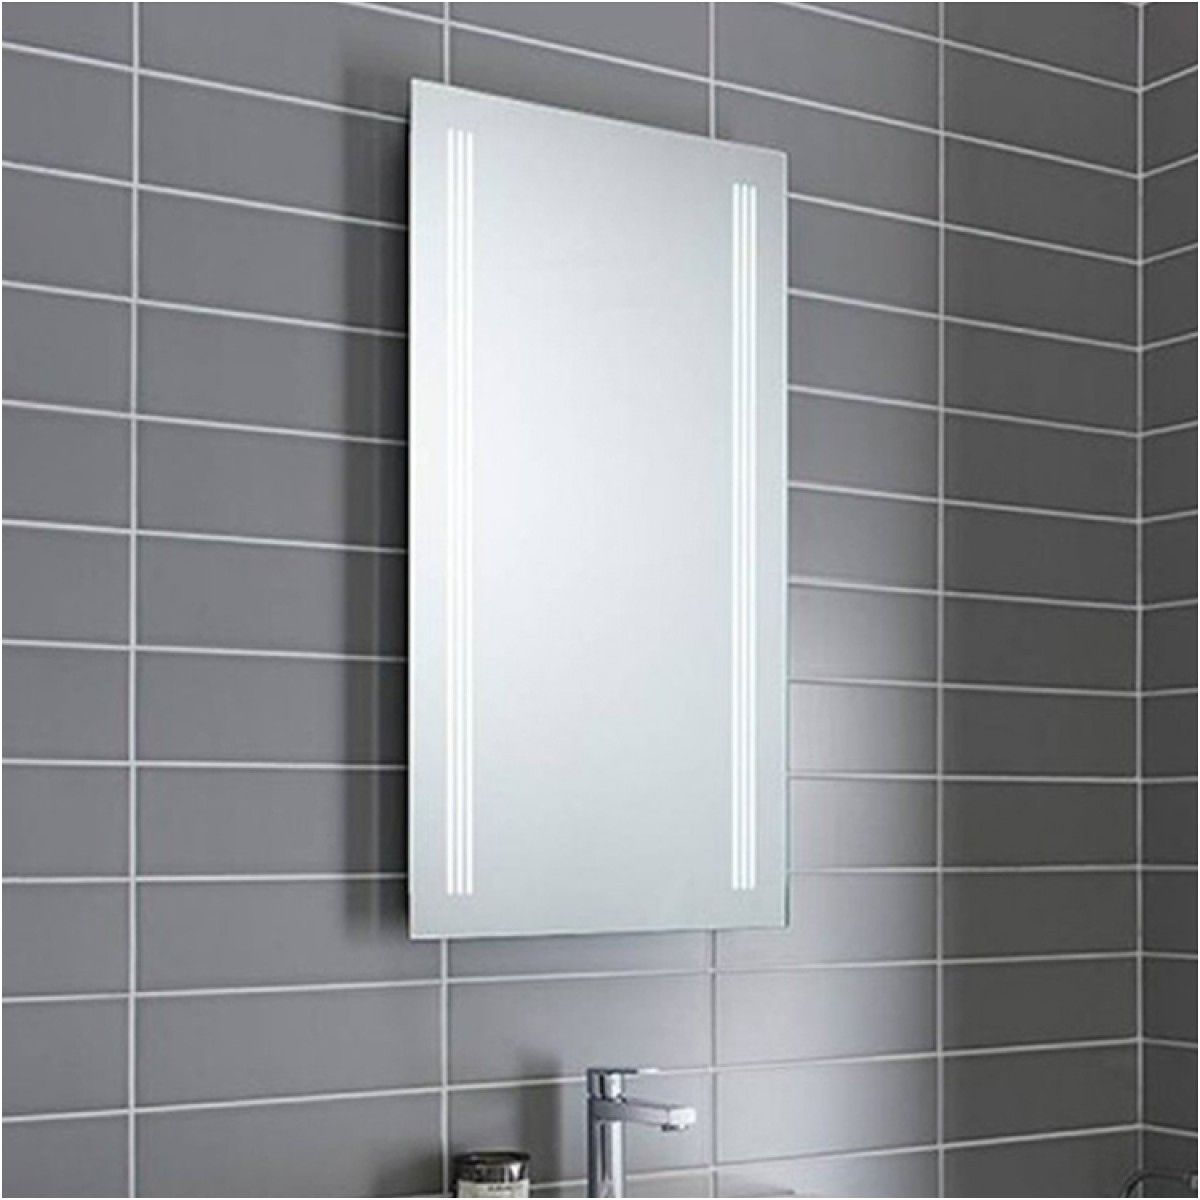 Unique Illuminated Bathroom Mirror 800mm Wide